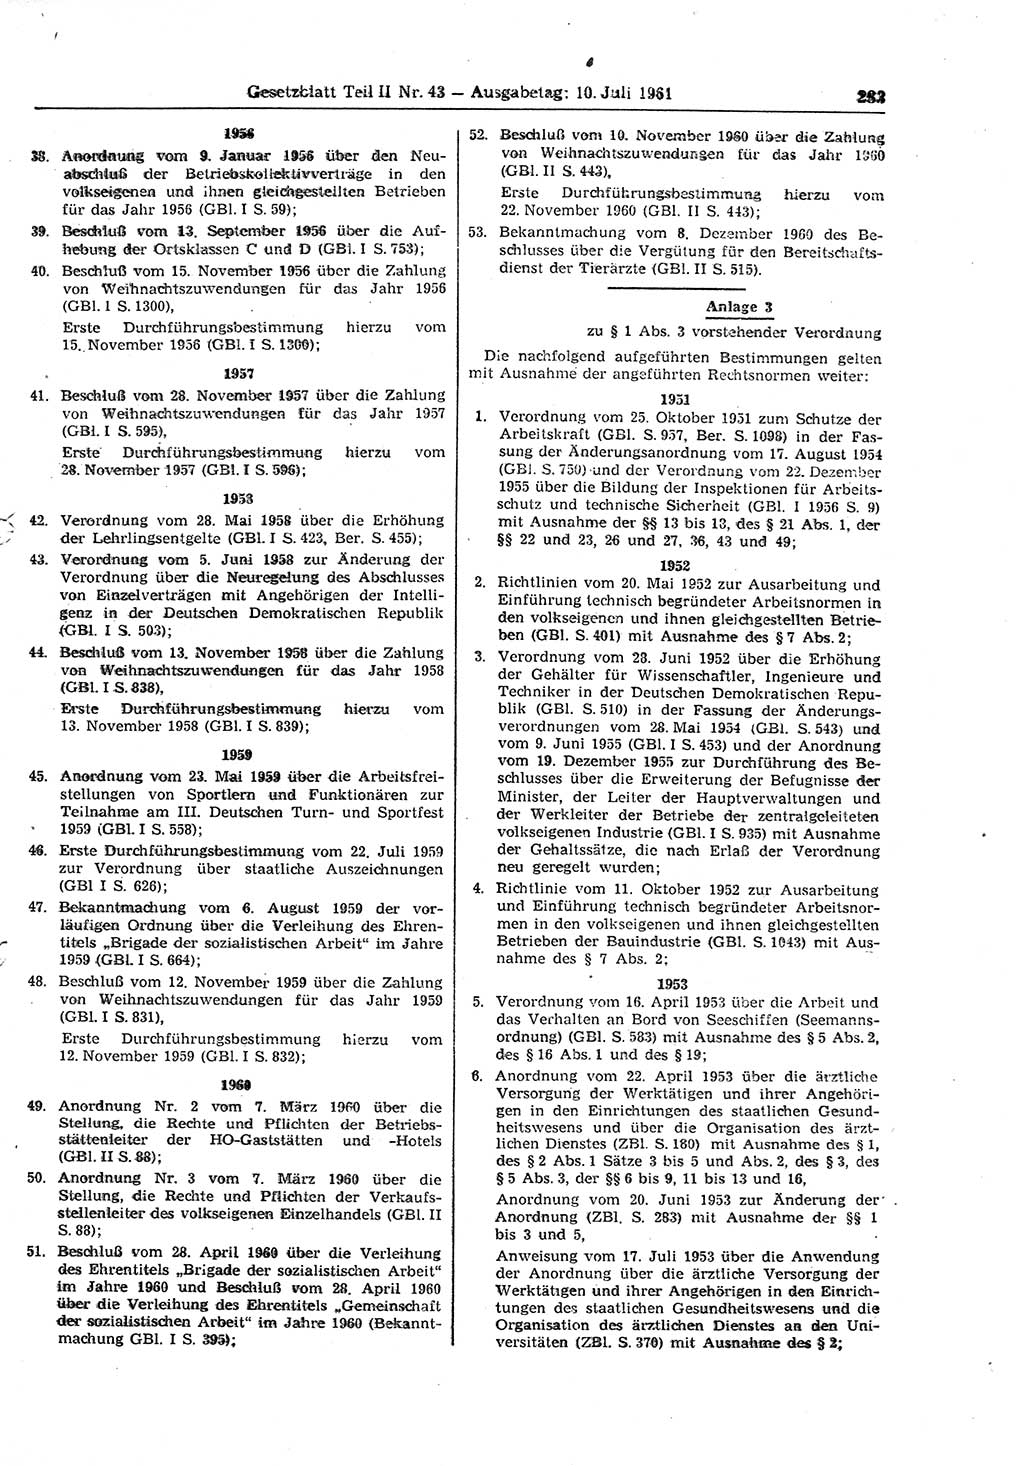 Gesetzblatt (GBl.) der Deutschen Demokratischen Republik (DDR) Teil ⅠⅠ 1961, Seite 283 (GBl. DDR ⅠⅠ 1961, S. 283)